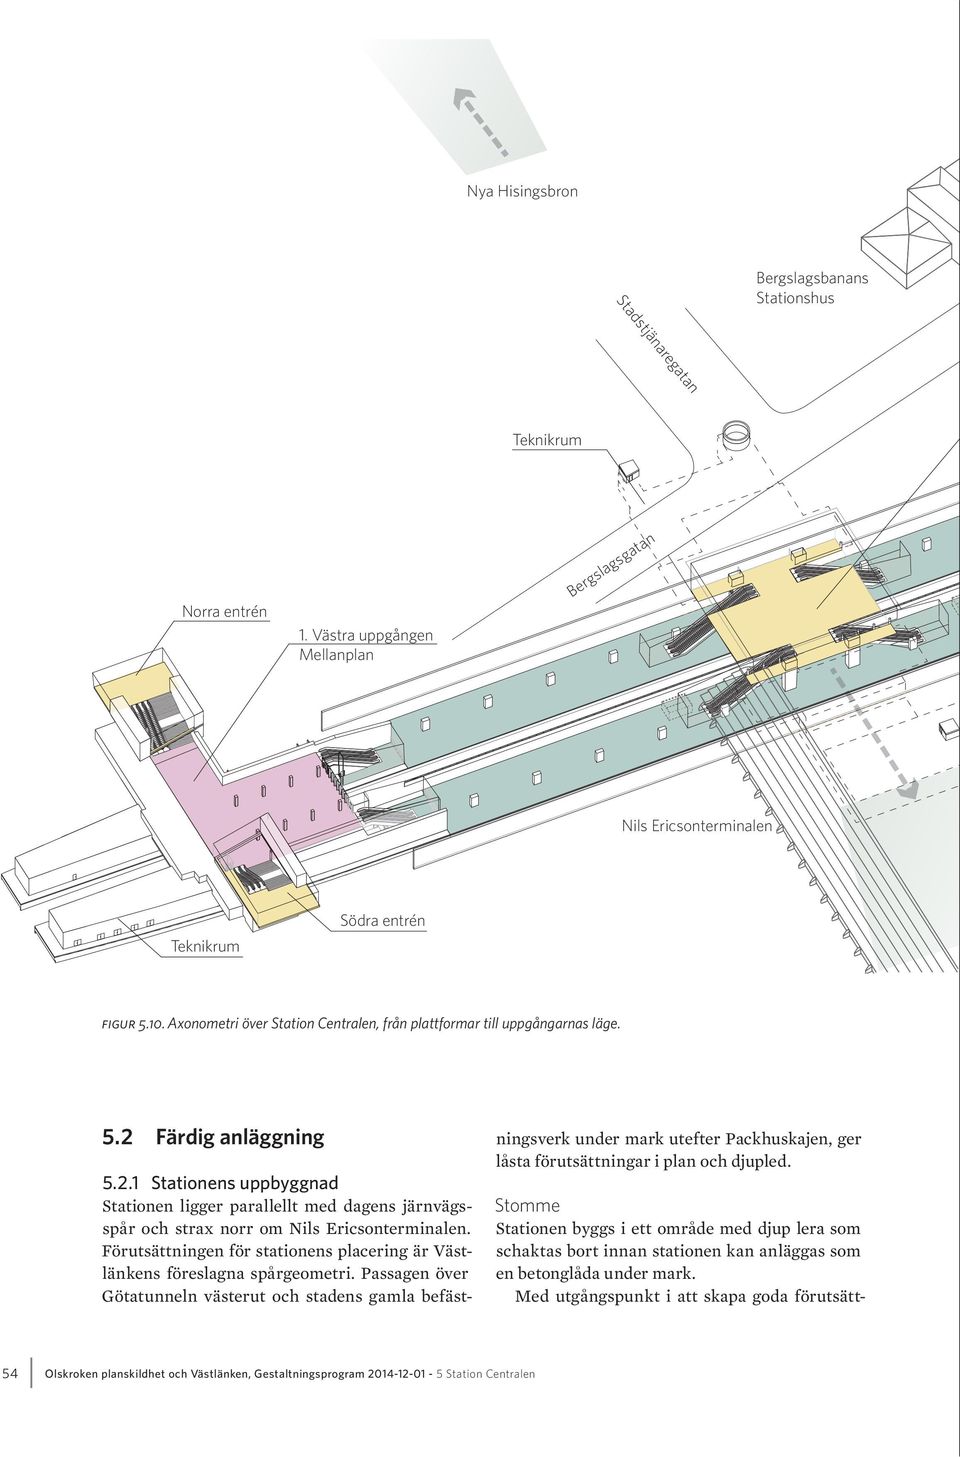 Förutsättningen för stationens placering är Västlänkens föreslagna spårgeometri.